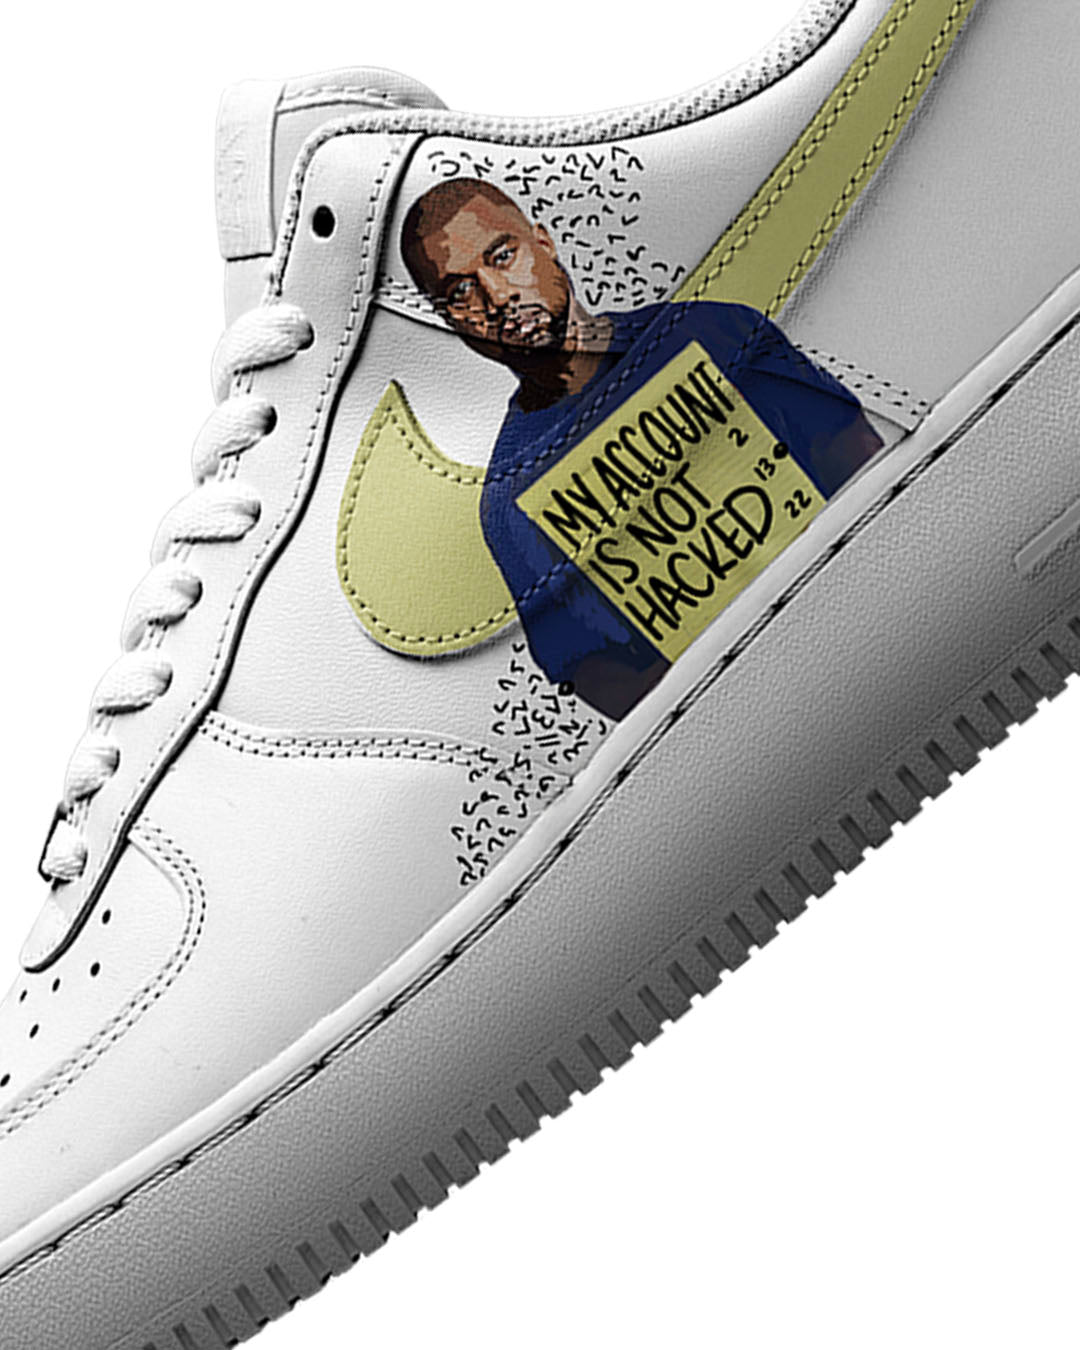 Nike Air Force 1 'Kanye'